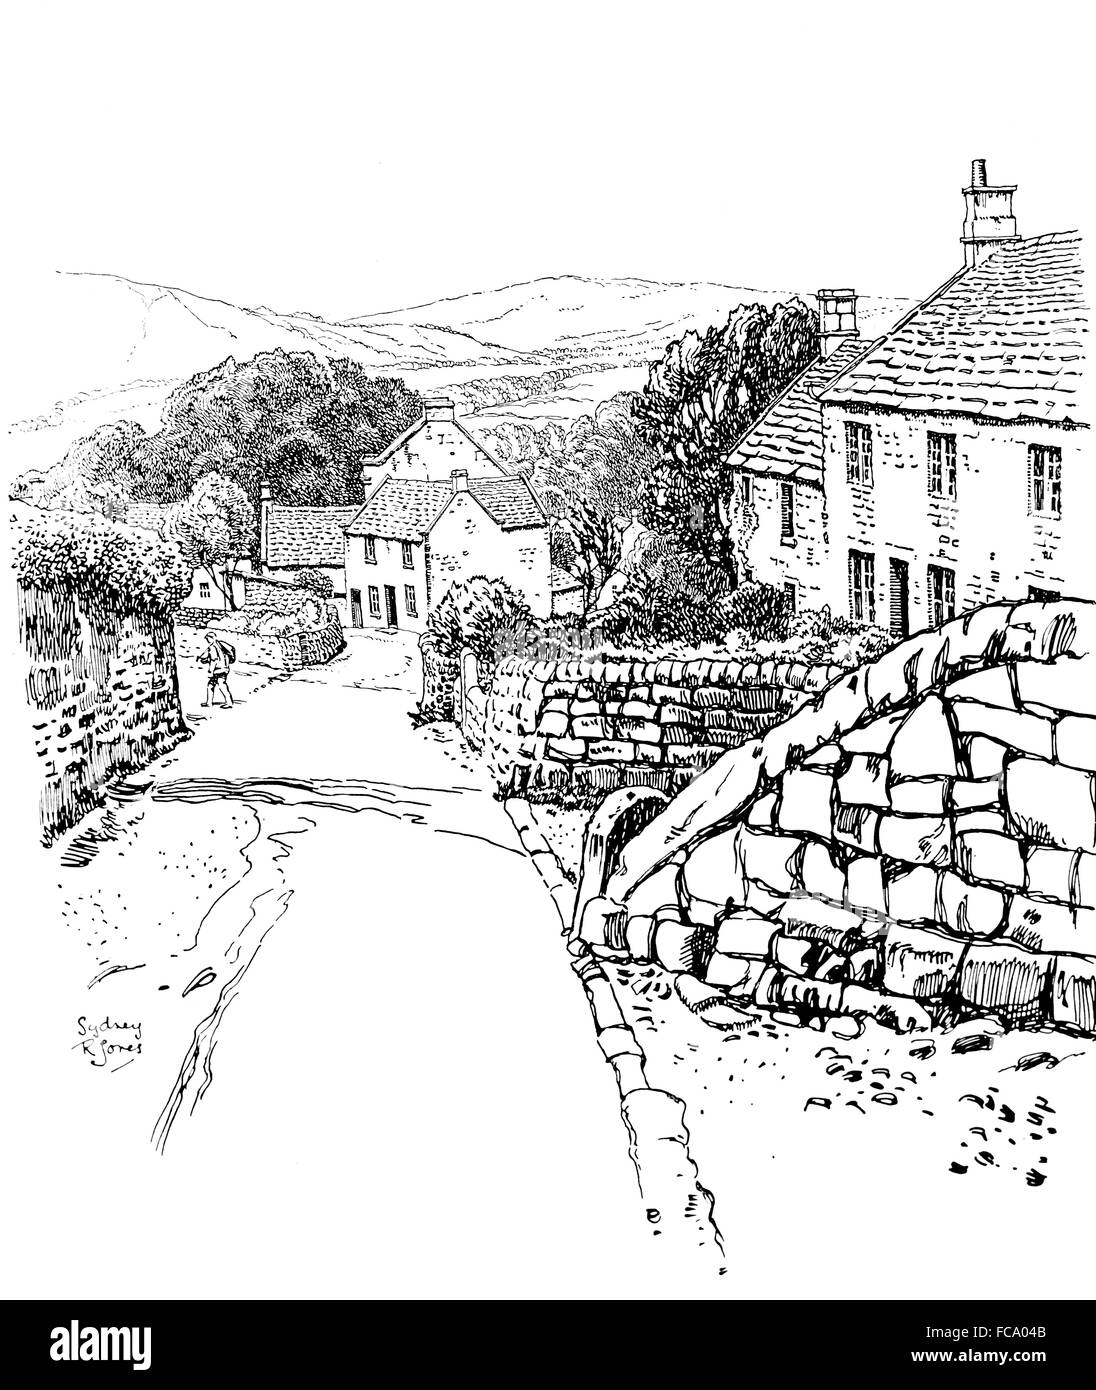 Royaume-uni, Angleterre, Derbyshire, Stanton dans les maisons en pierre, Route principale en1911, illustration par ligne, Sydney R Jones Banque D'Images